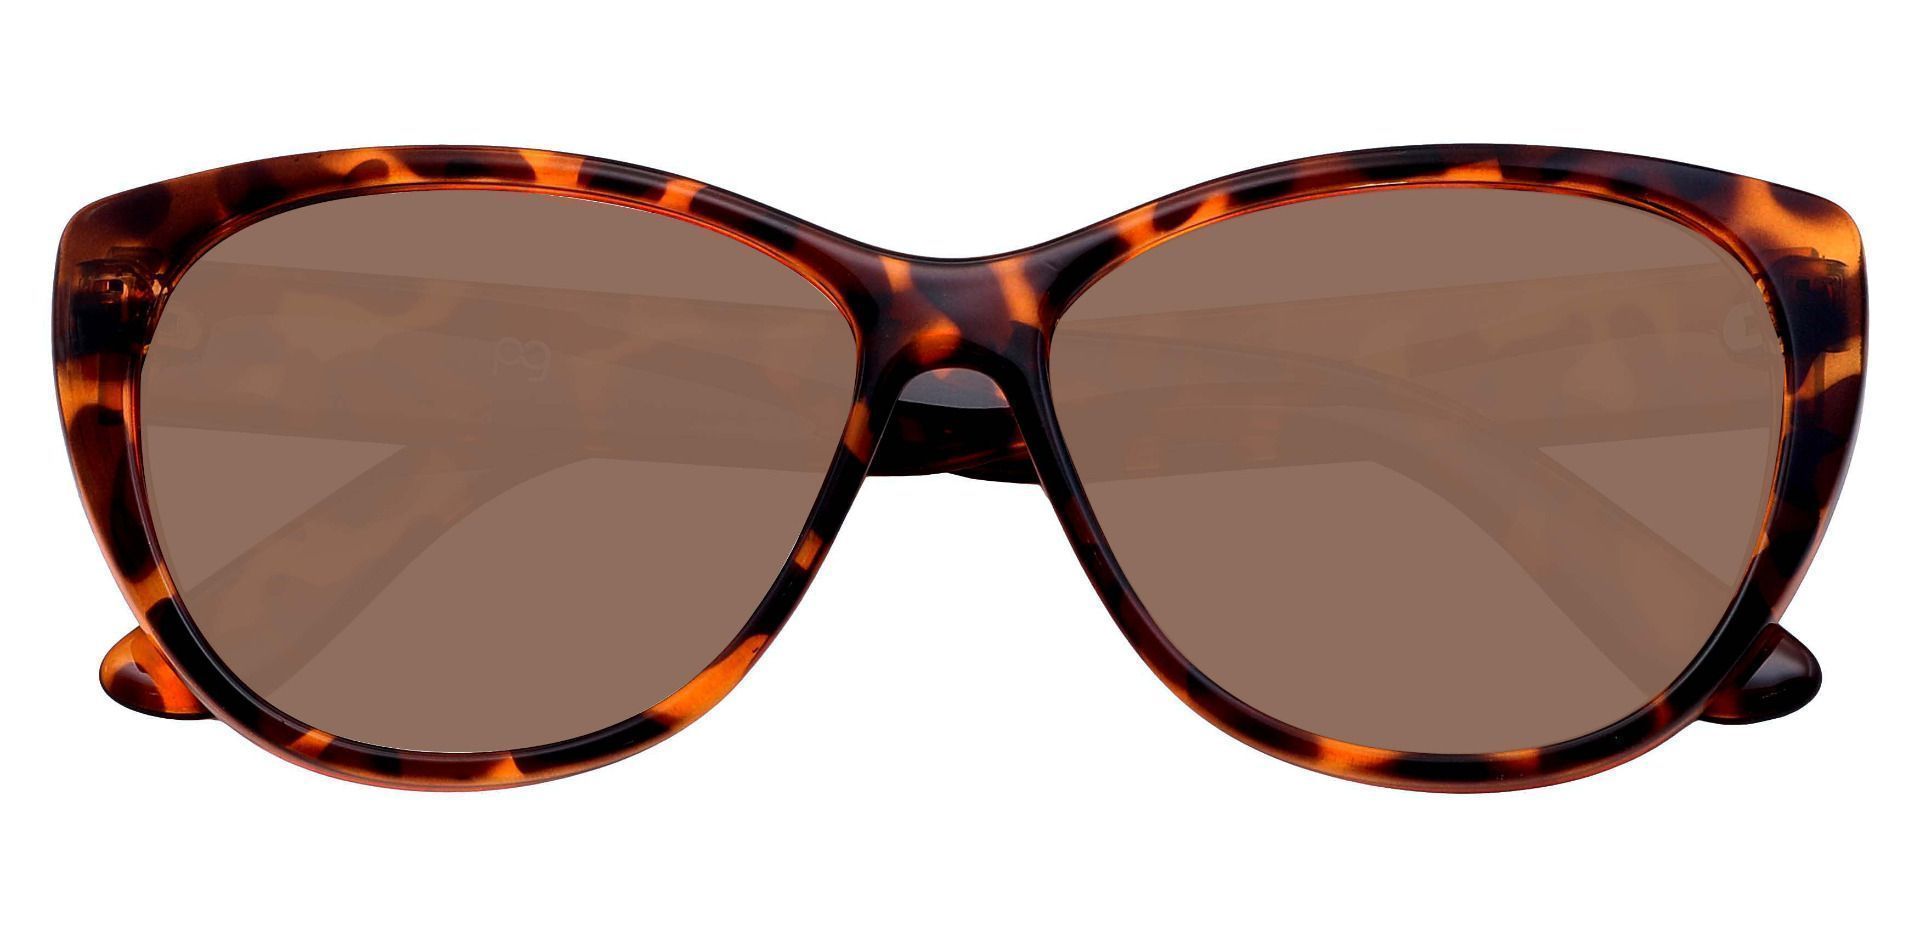 Lynn Cat-Eye Reading Sunglasses - Tortoise Frame With Brown Lenses